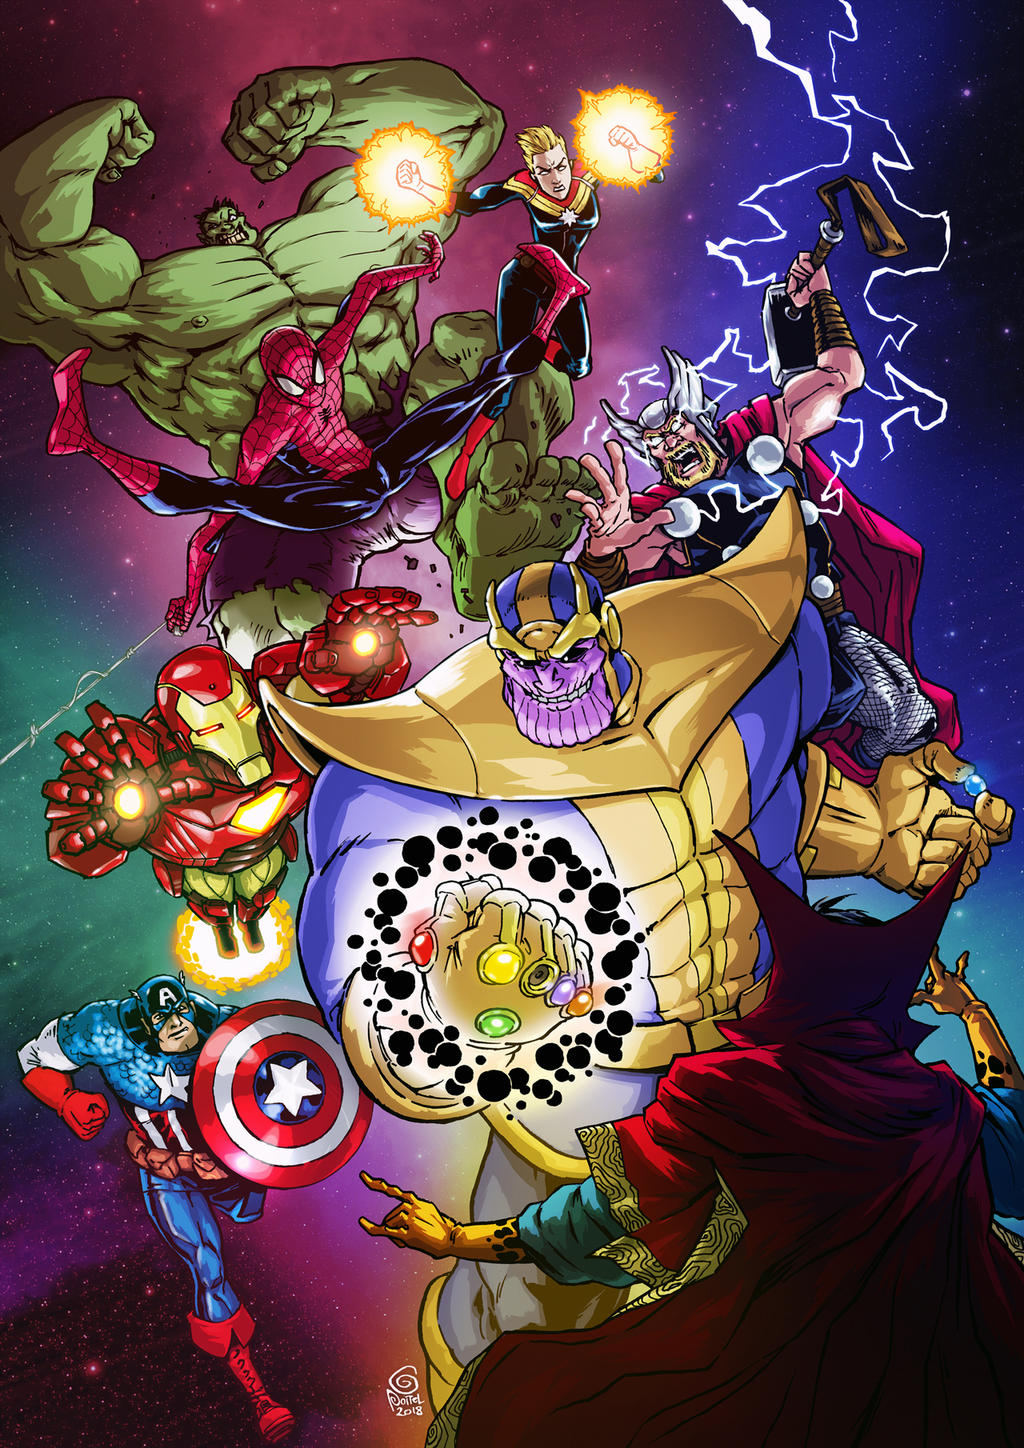 Avengers VS Thanos by gpoitel on DeviantArt